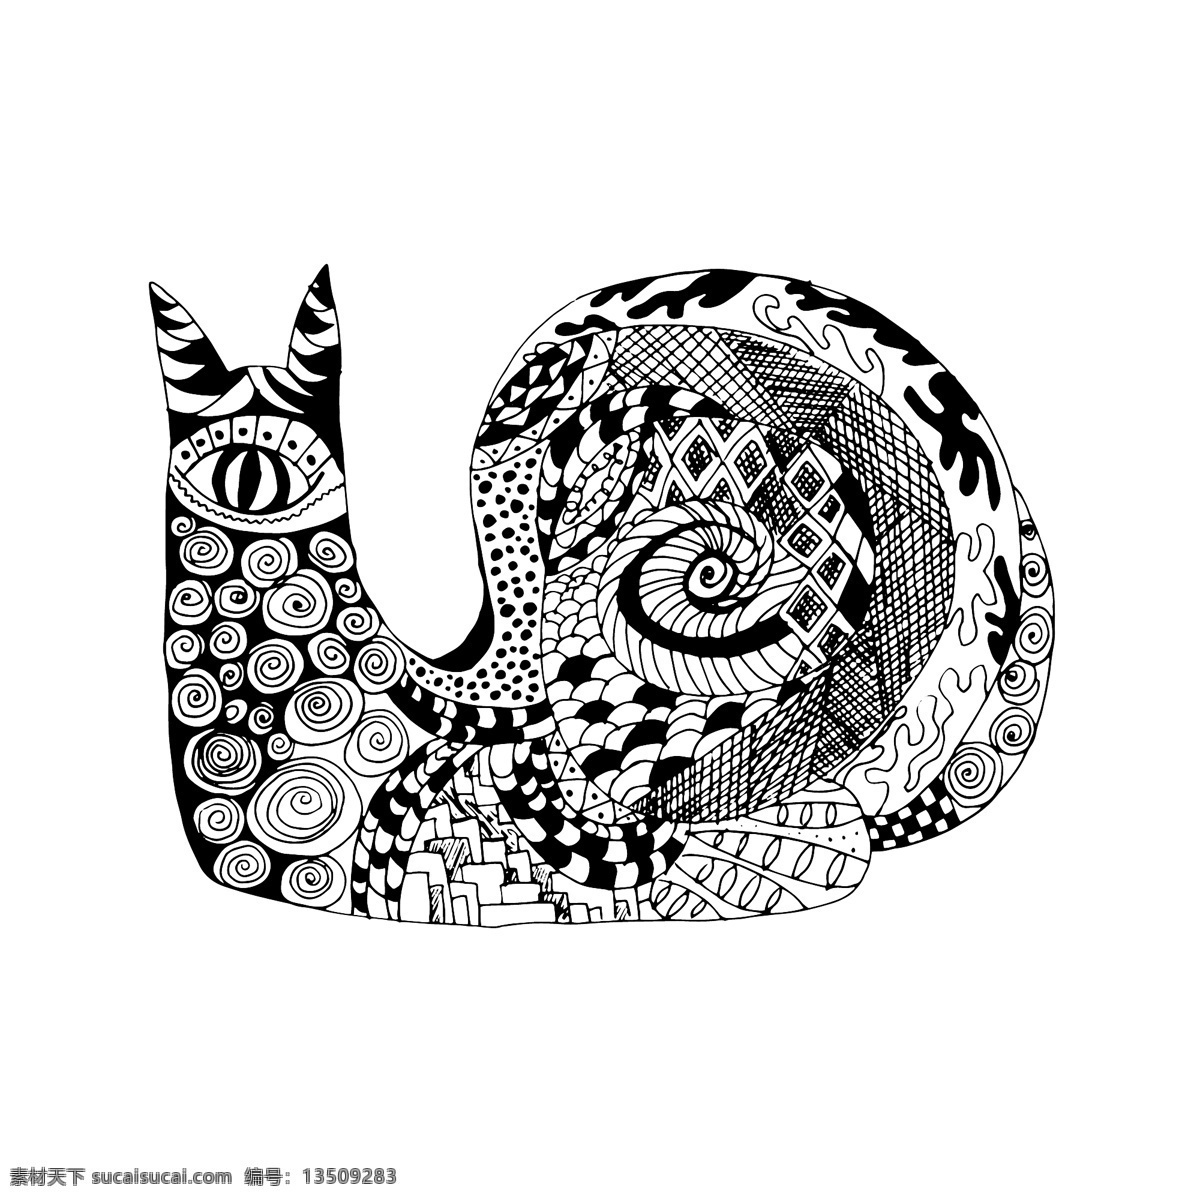 黑白 时尚 艺术 蜗牛 插画 图案 昆虫 动物 创意